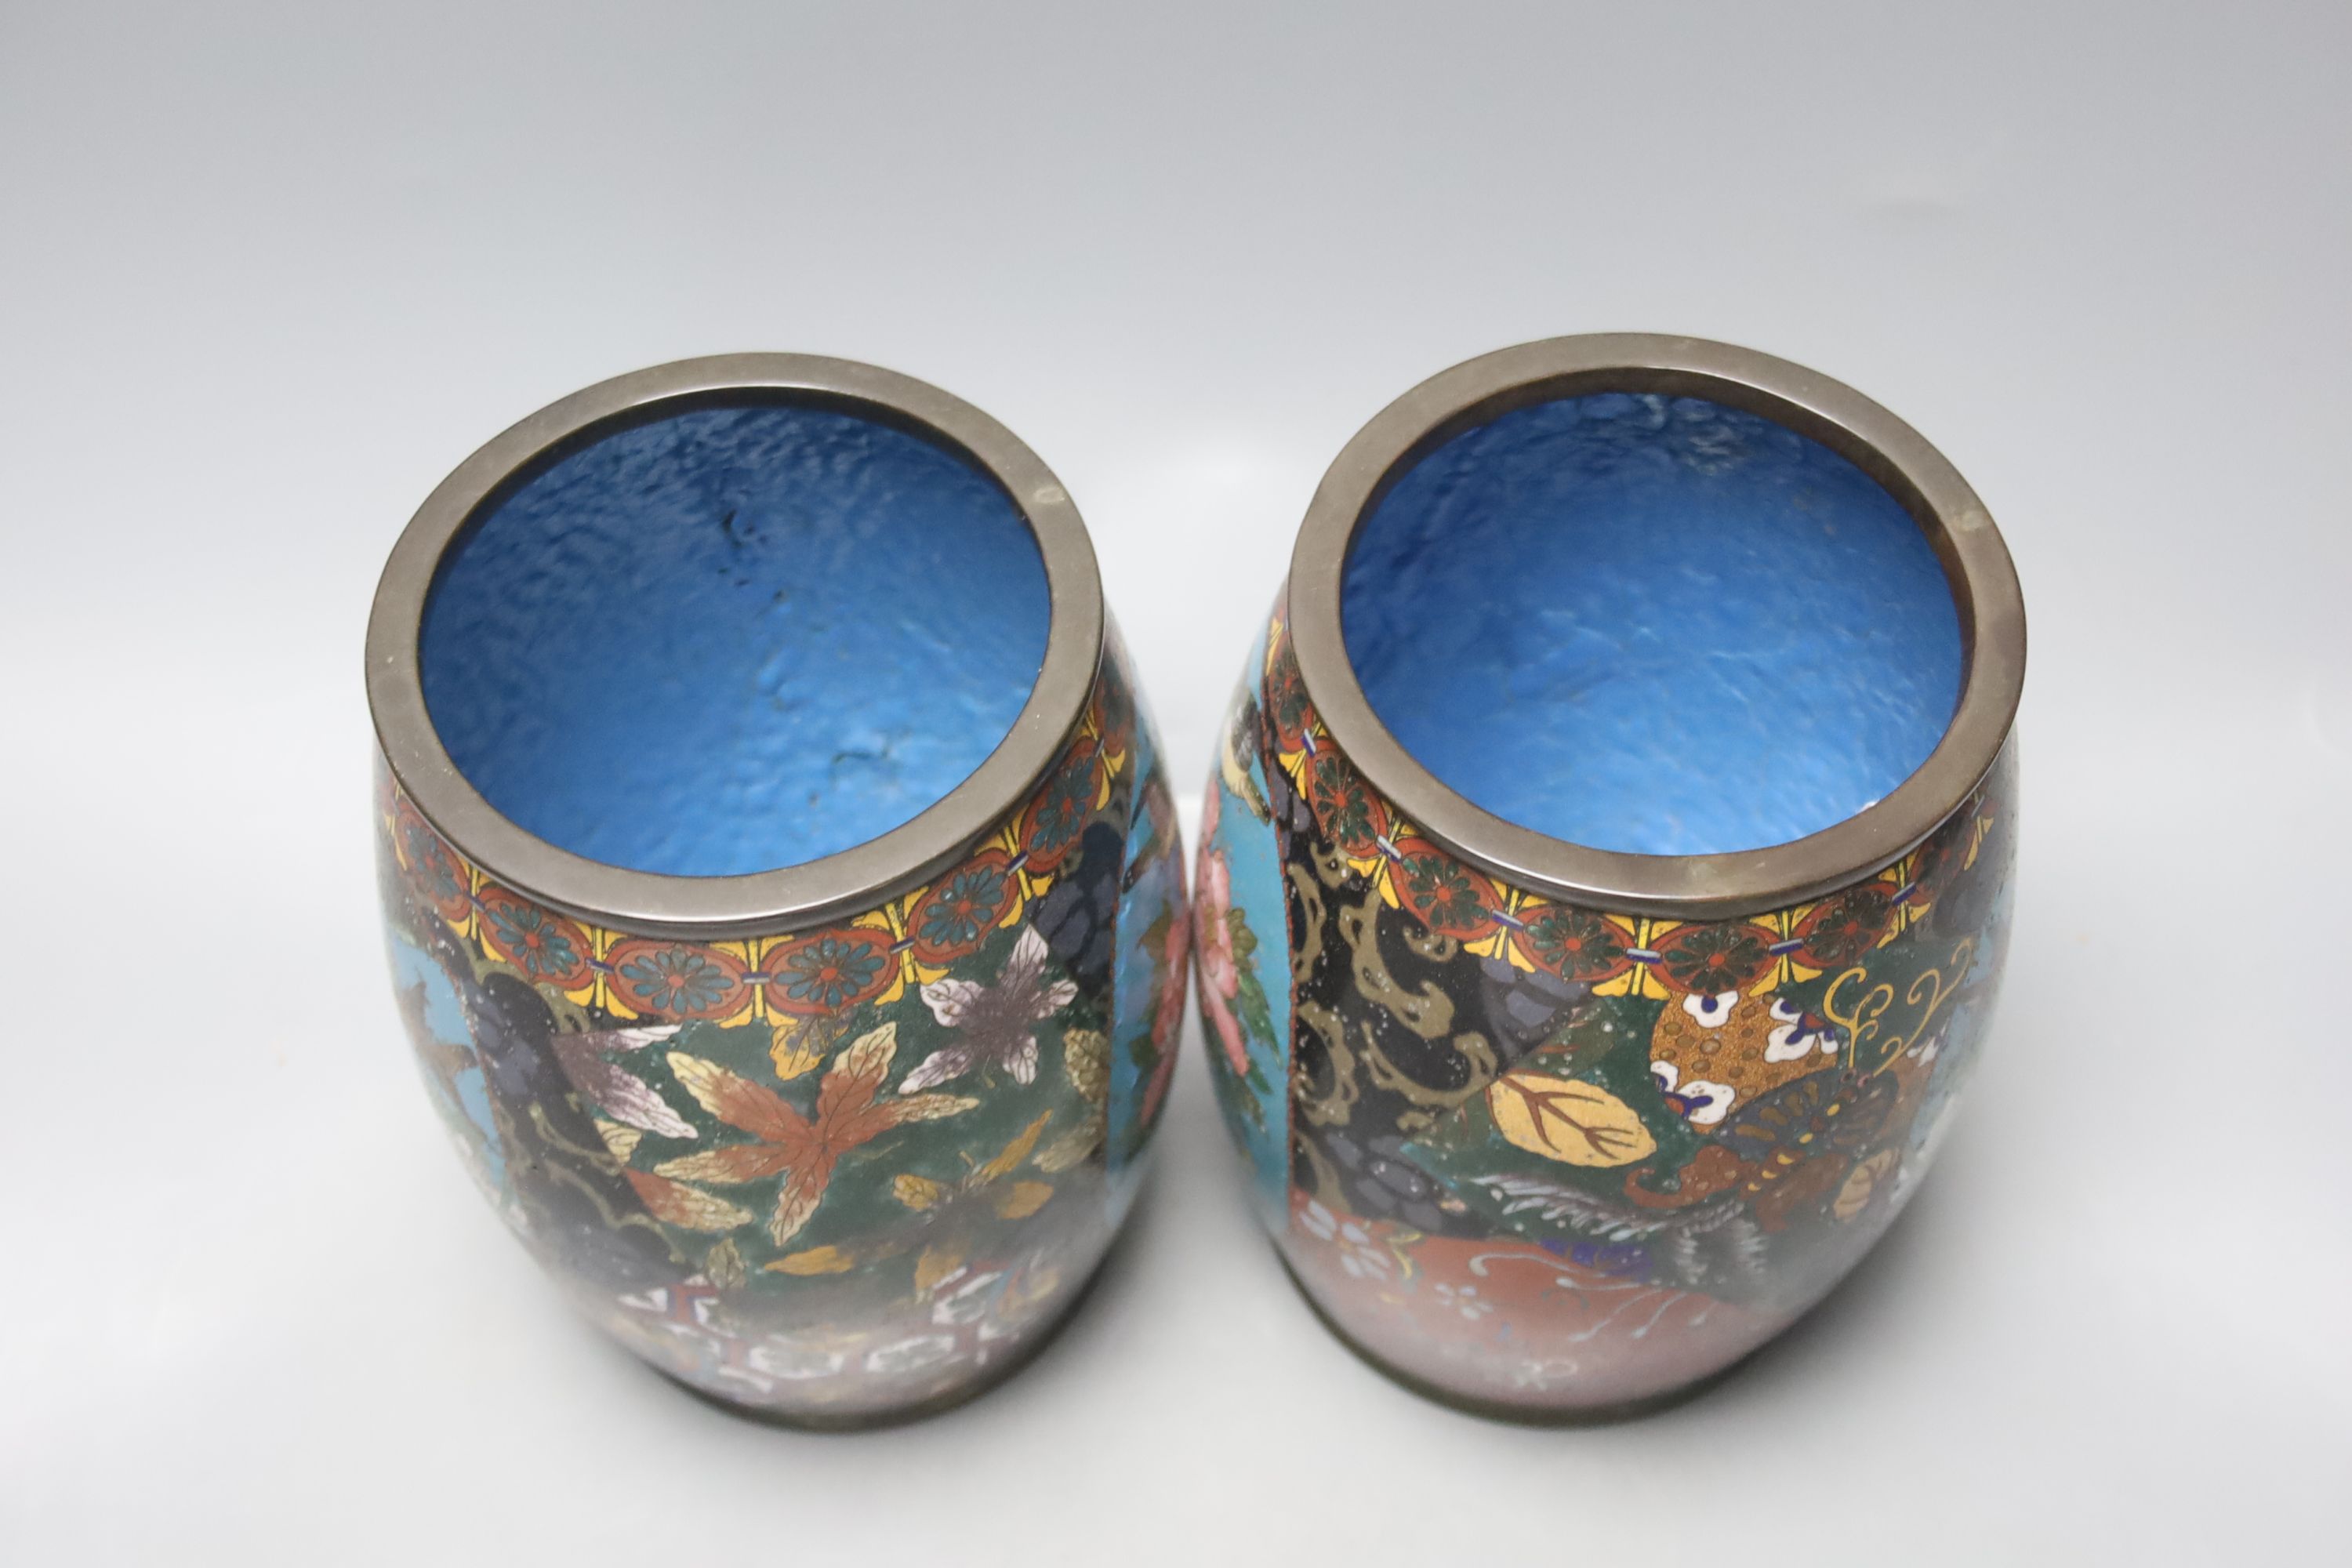 A pair of Japanese cloisonne enamel barrel-shaped vases and a similar bottle vase